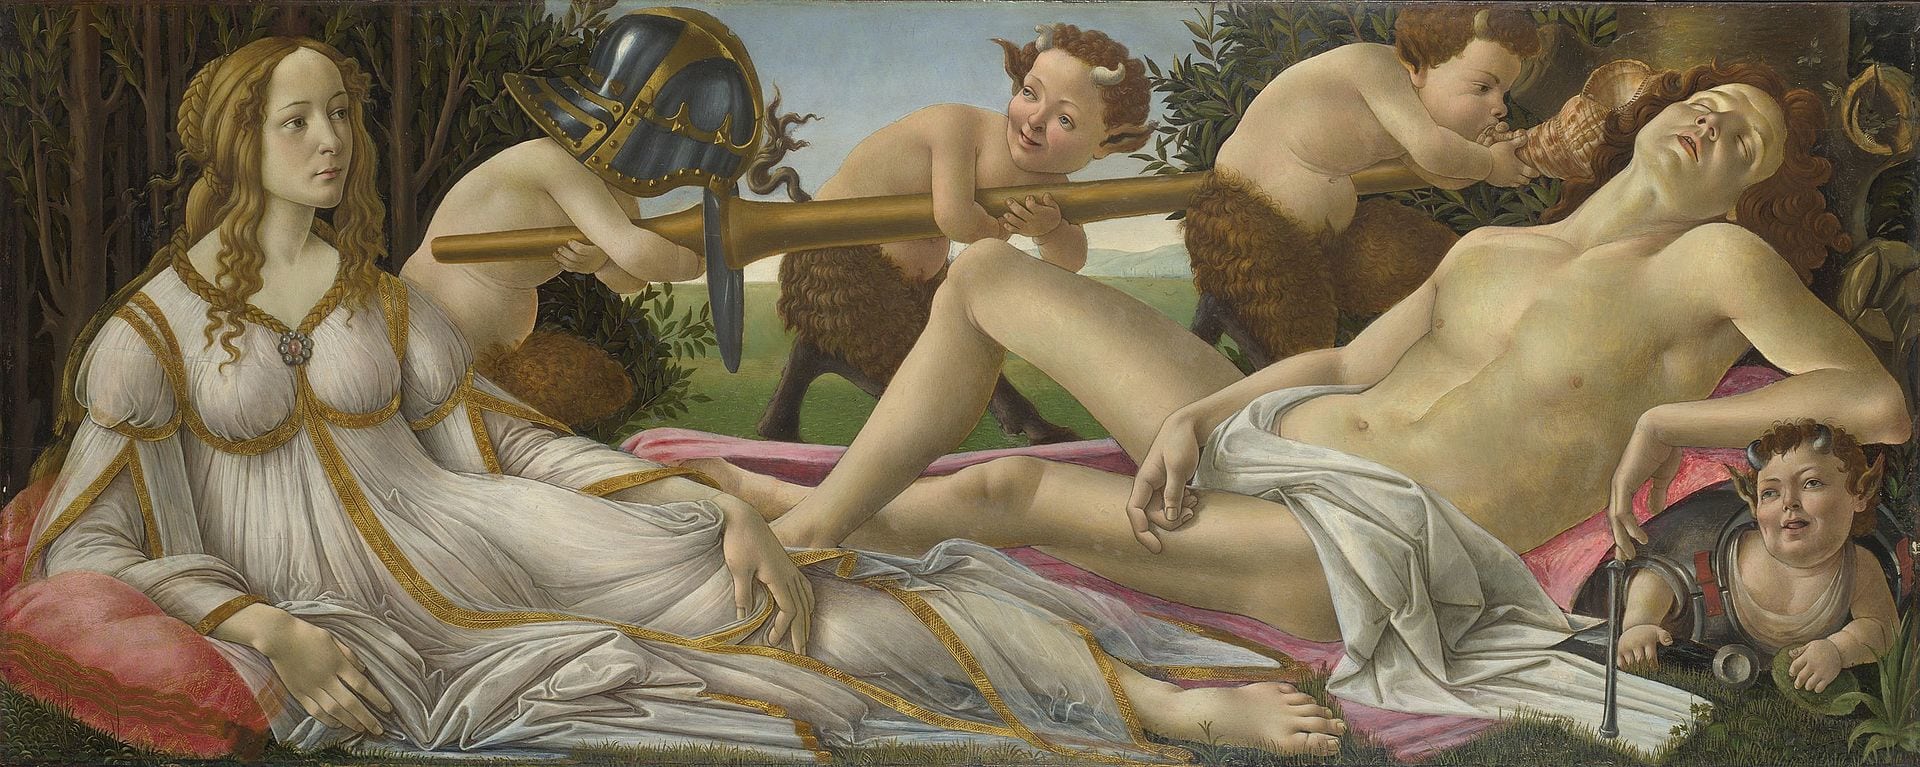 Sandro Botticelli, Venus und Mars, ca. 1483